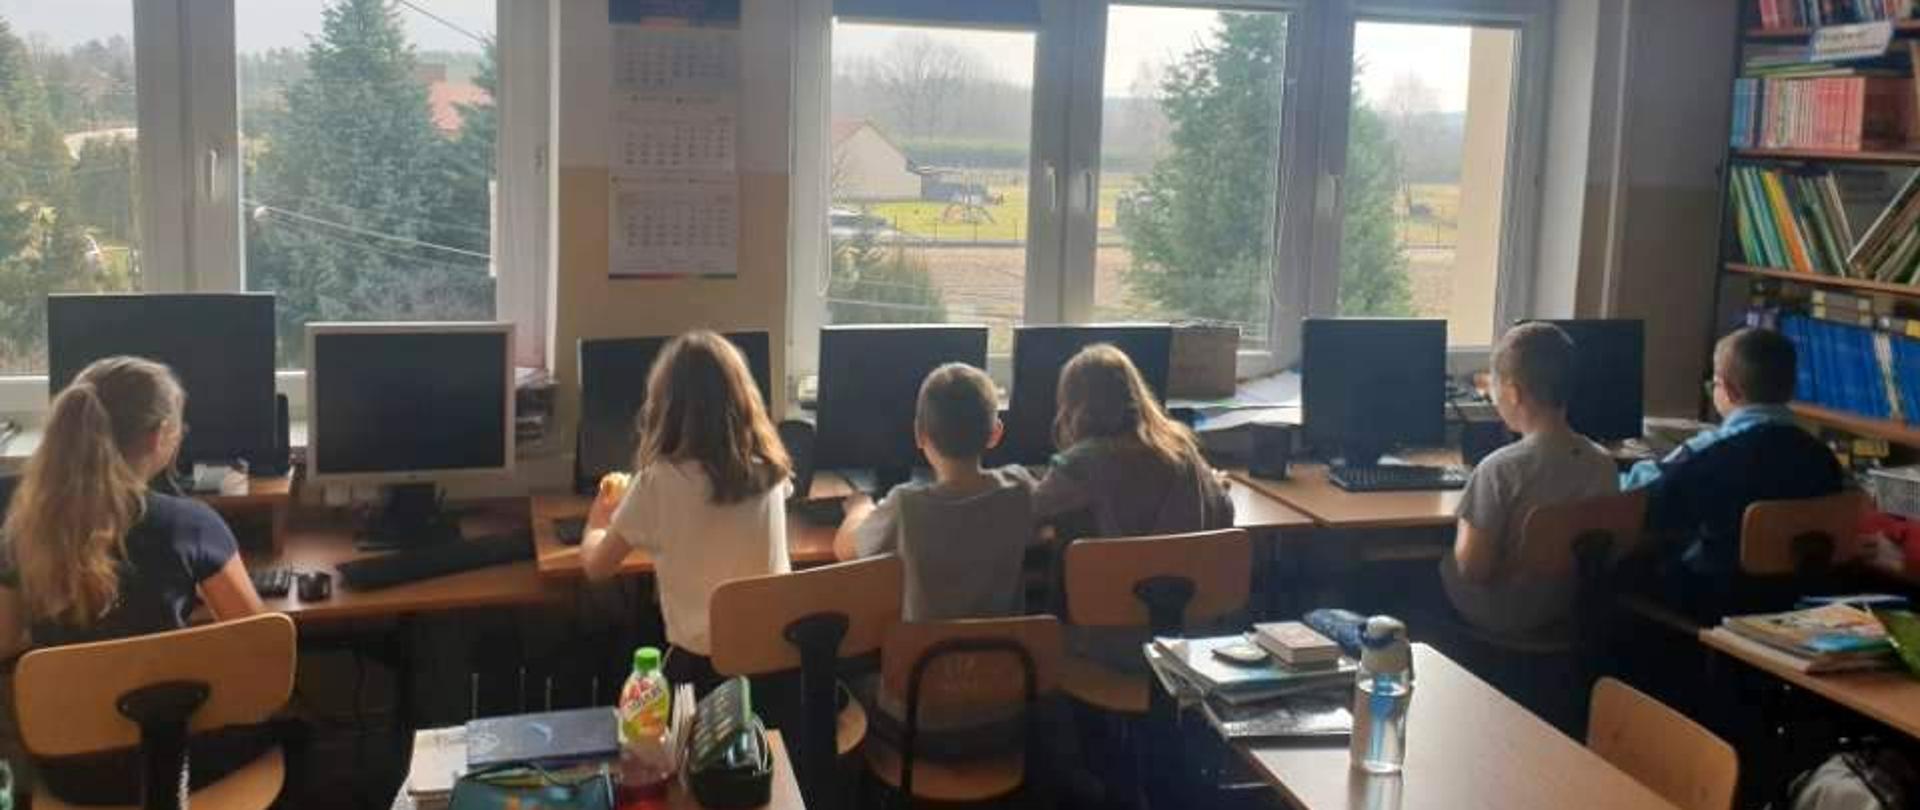 dzieci siedzące przy komputerach